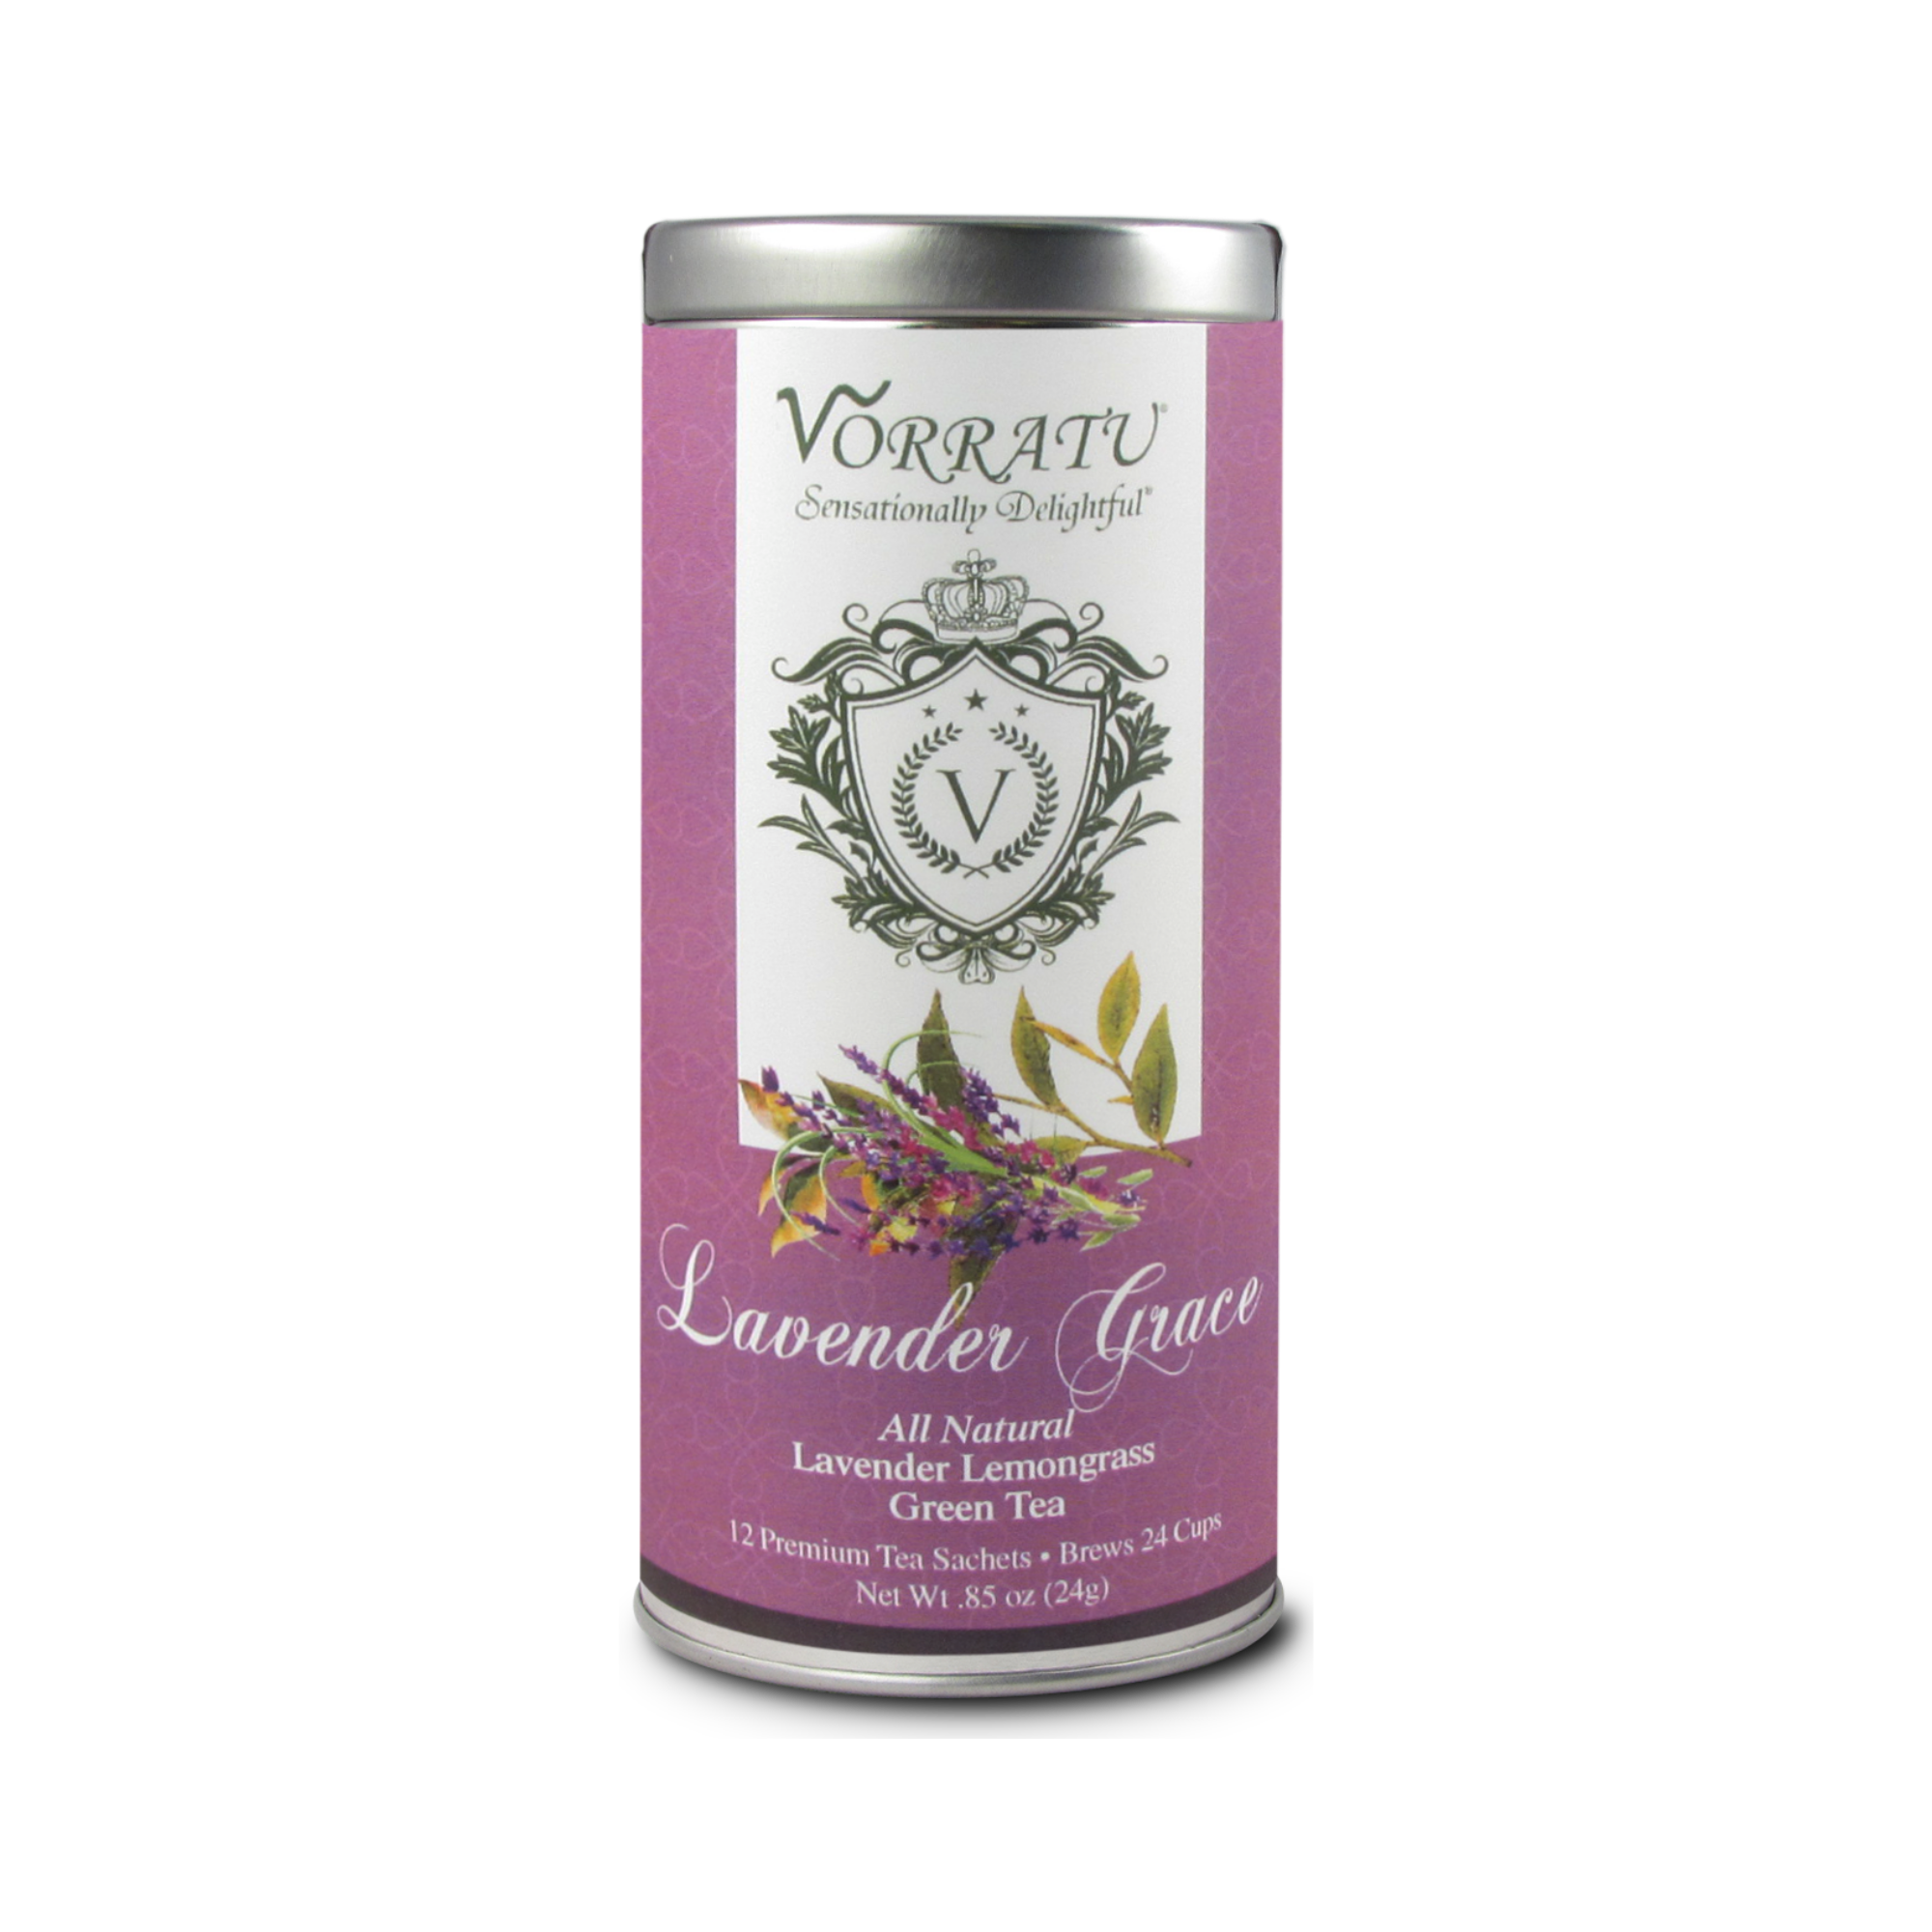 Vorratu Company Lavender Grace Green Tea Green Tea Sachets